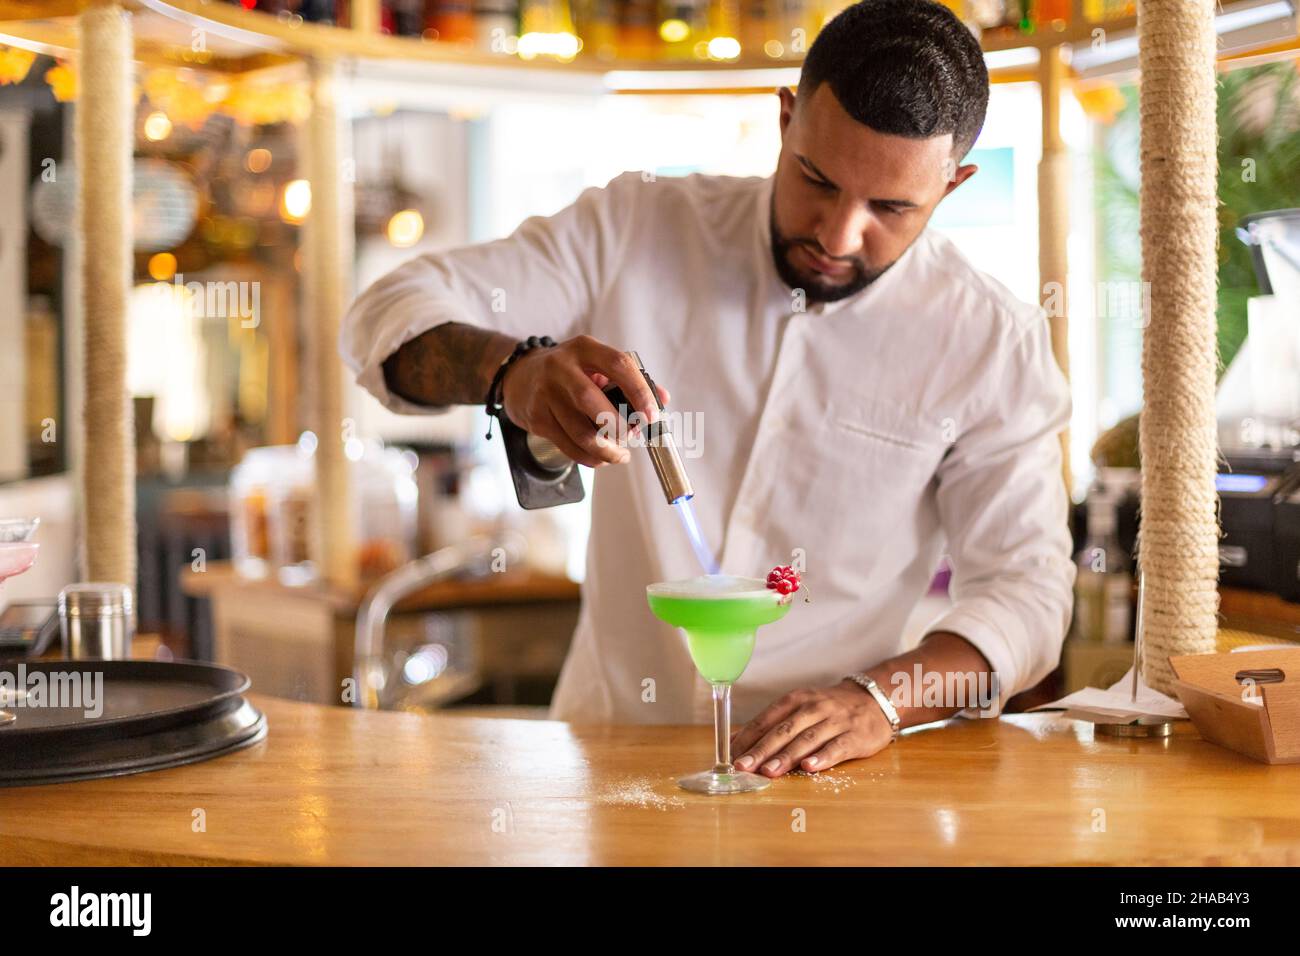 Un élégant jeune serveur latino-américain prépare avec soin une boisson alcoolisée dans un restaurant moderne.Espace pour le texte.Mise au point sélective. Banque D'Images